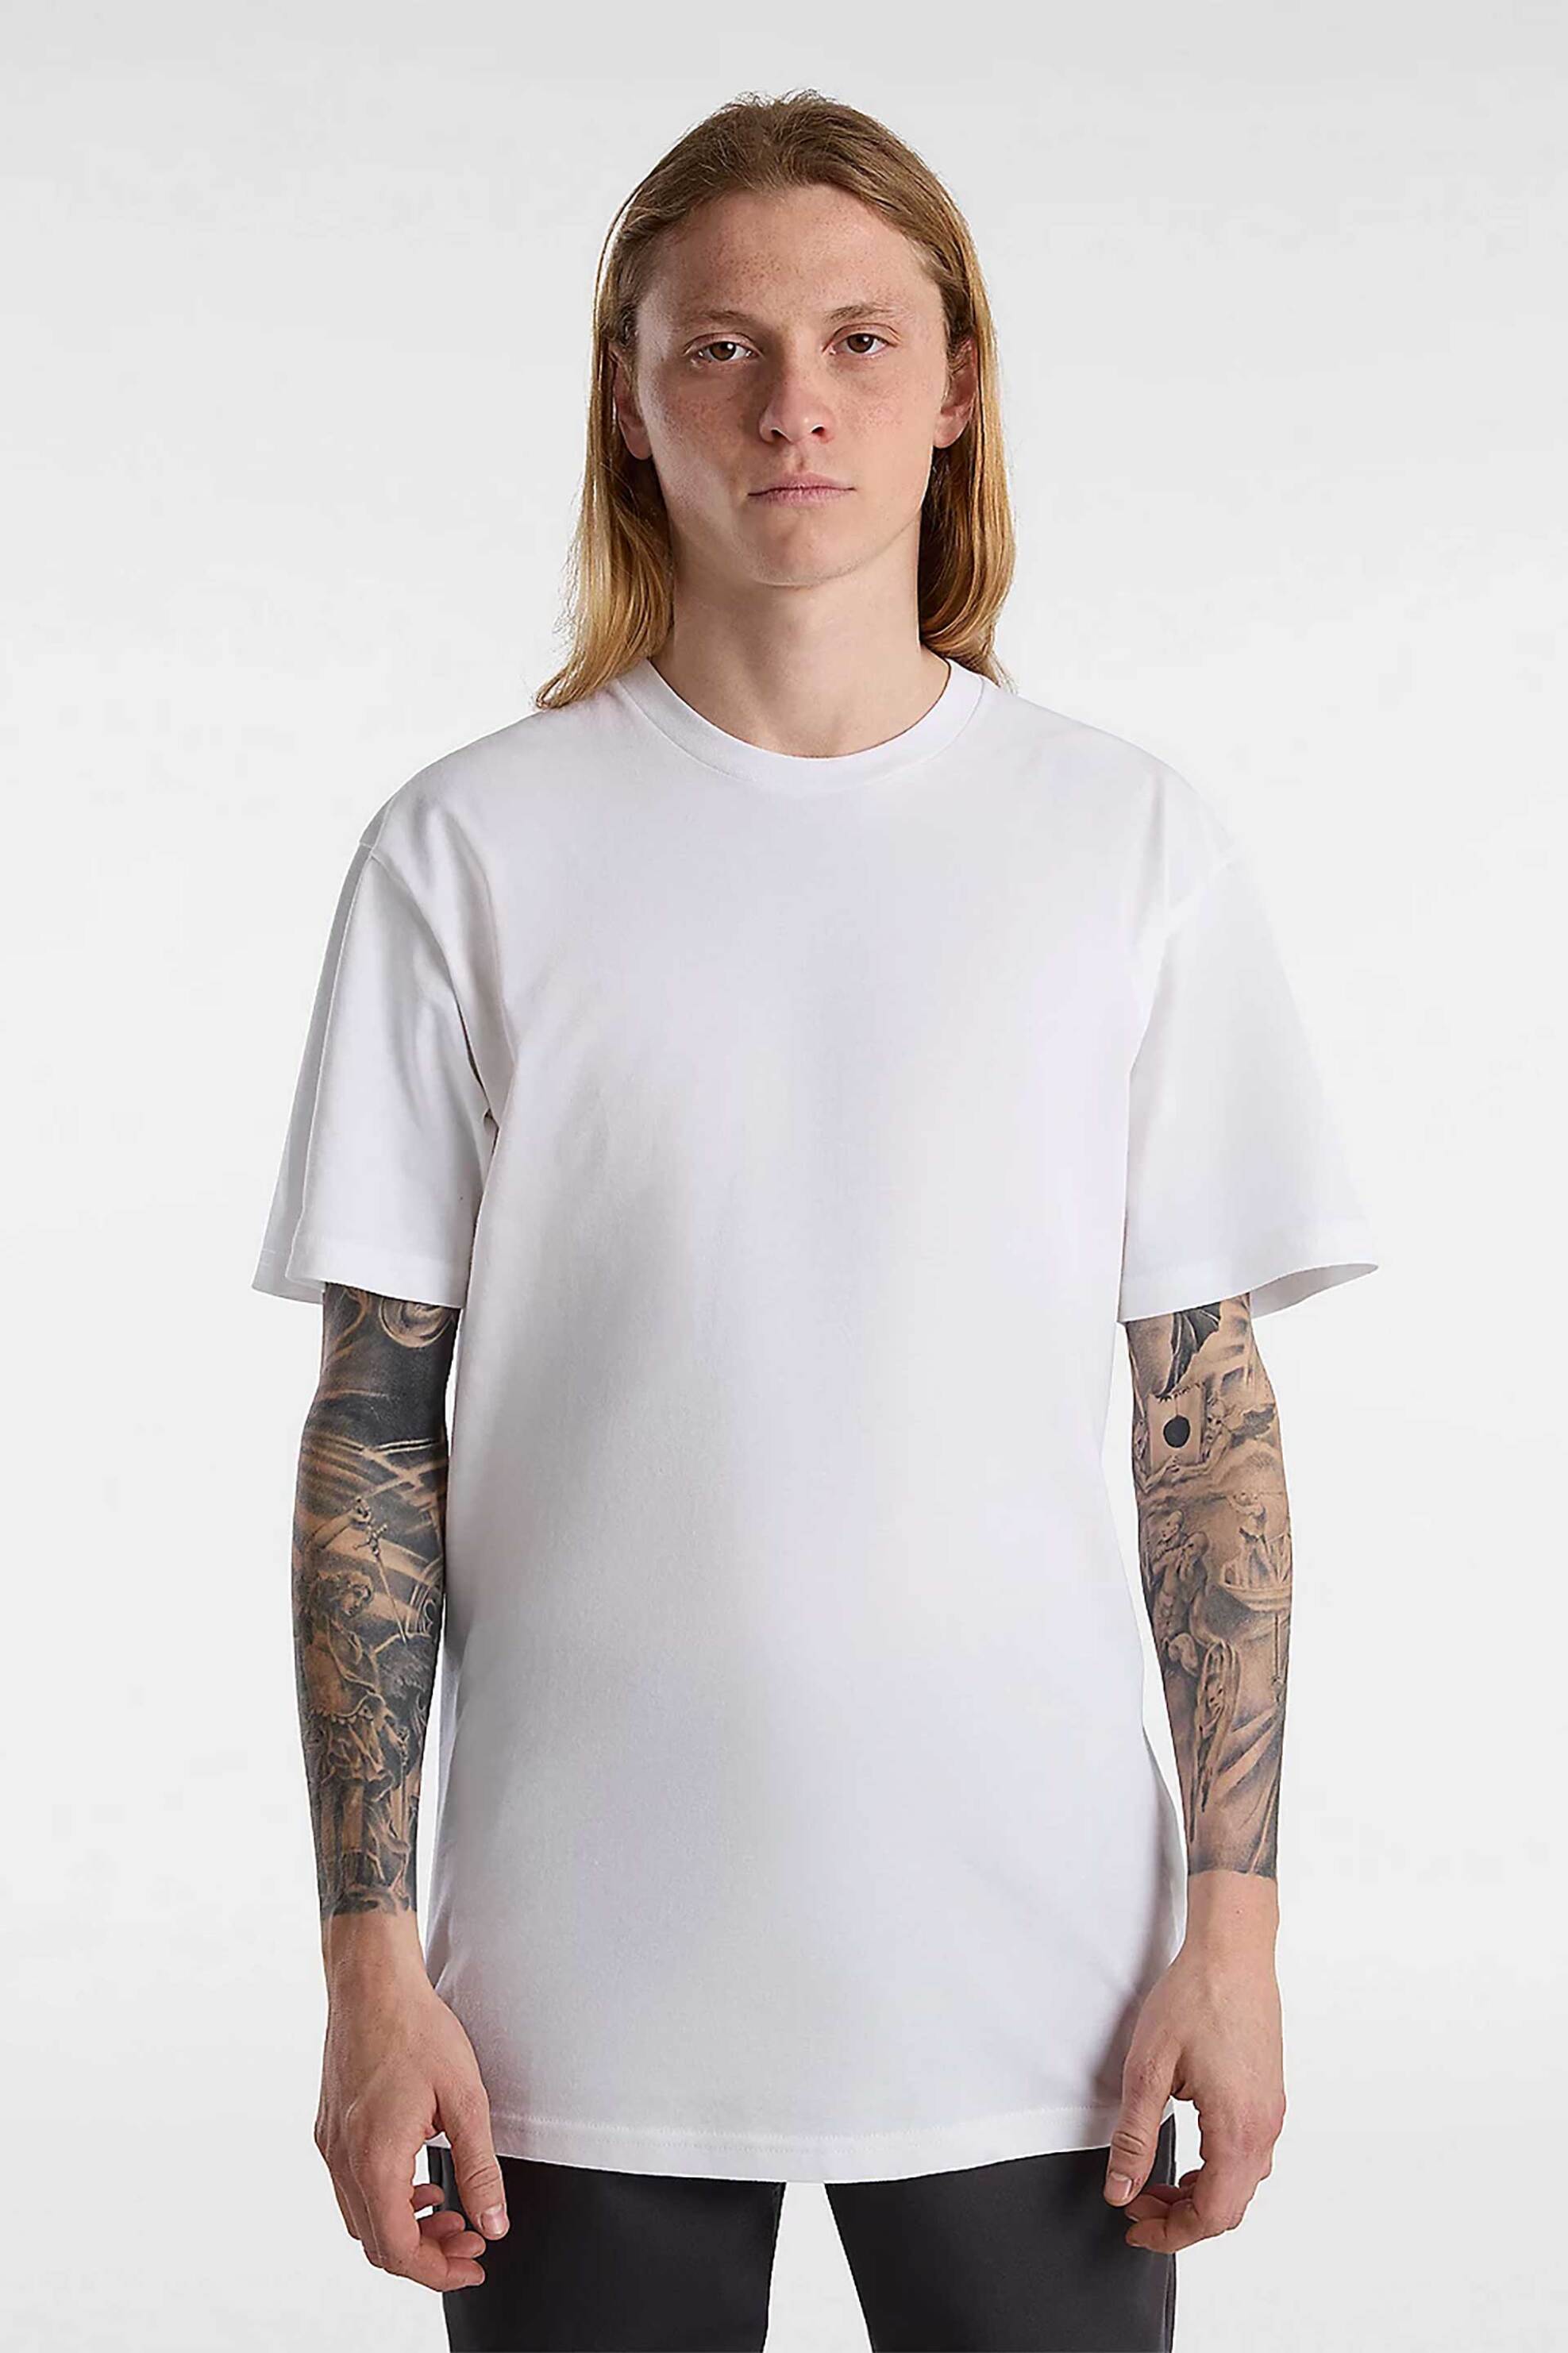 Ανδρική Μόδα > Ανδρικά Ρούχα > Ανδρικές Μπλούζες > Ανδρικά T-Shirts Vans σετ ανδρικά μονόχρωμα T-shirts "Basic" (3 τεμάχια) - VN000KHDWHT1 Λευκό